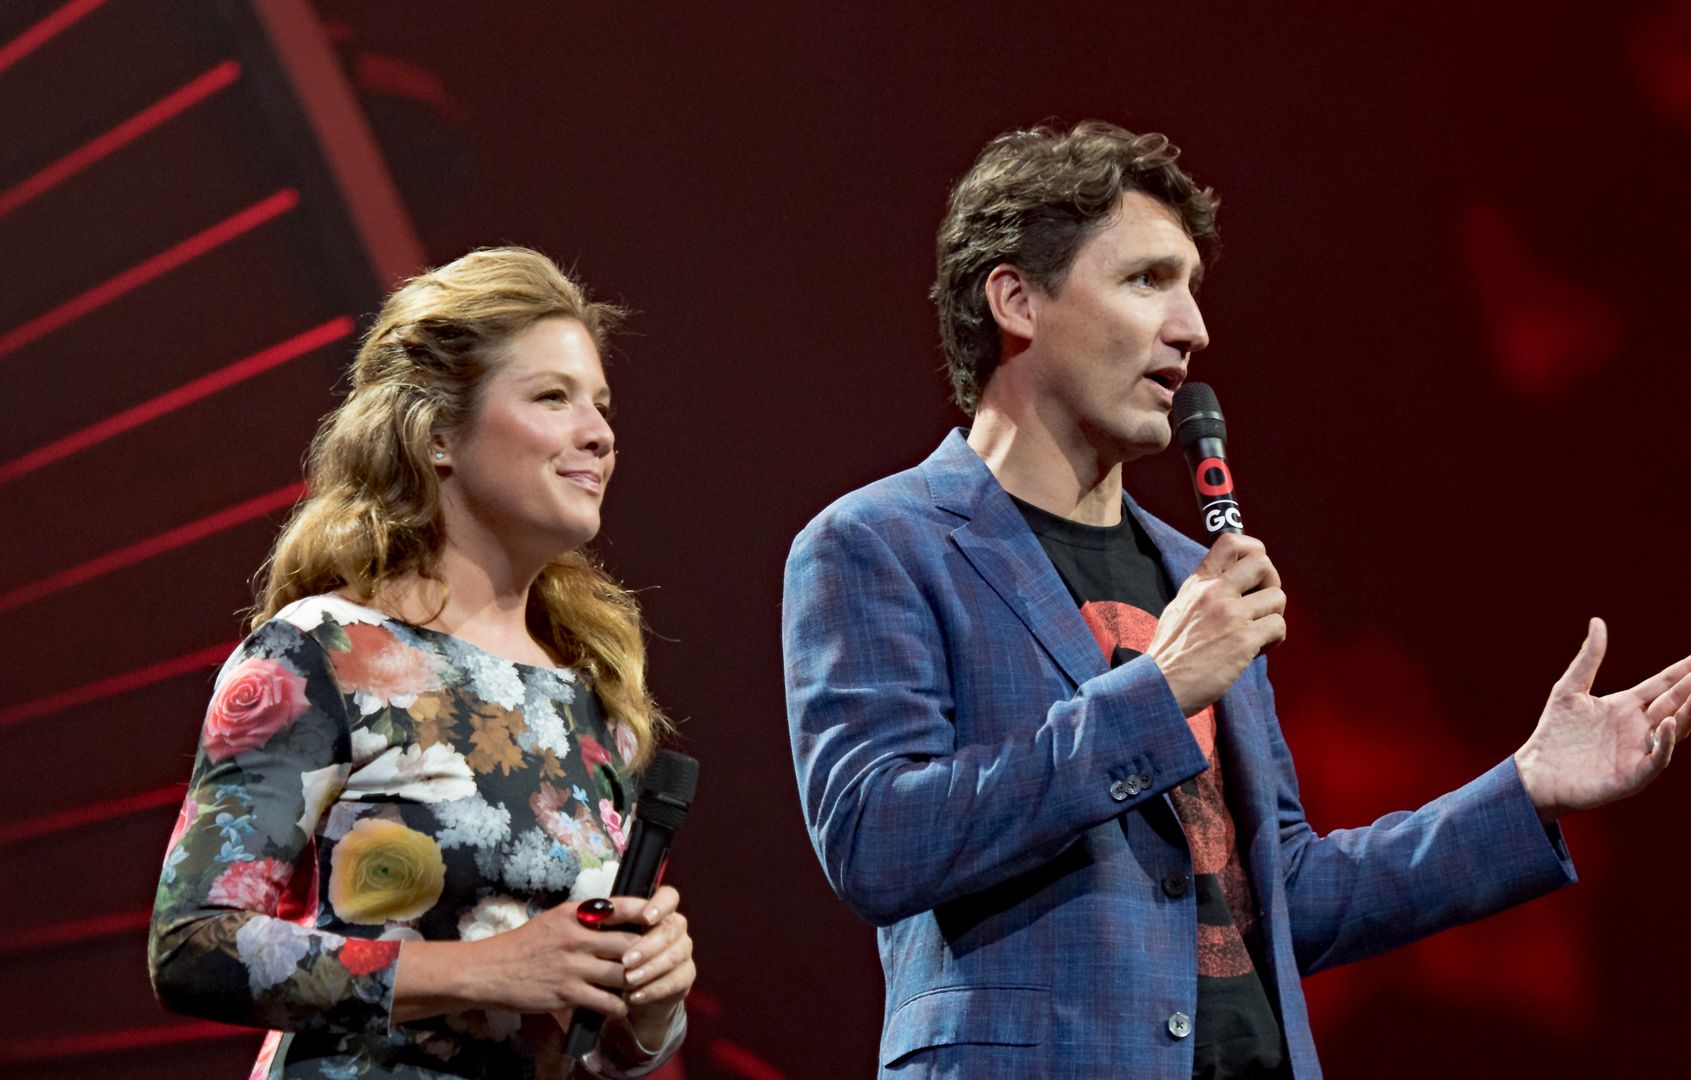 Justin Trudeau rozstaje się z żoną. Para po 18 latach małżeństwa podjęła decyzję o separacji